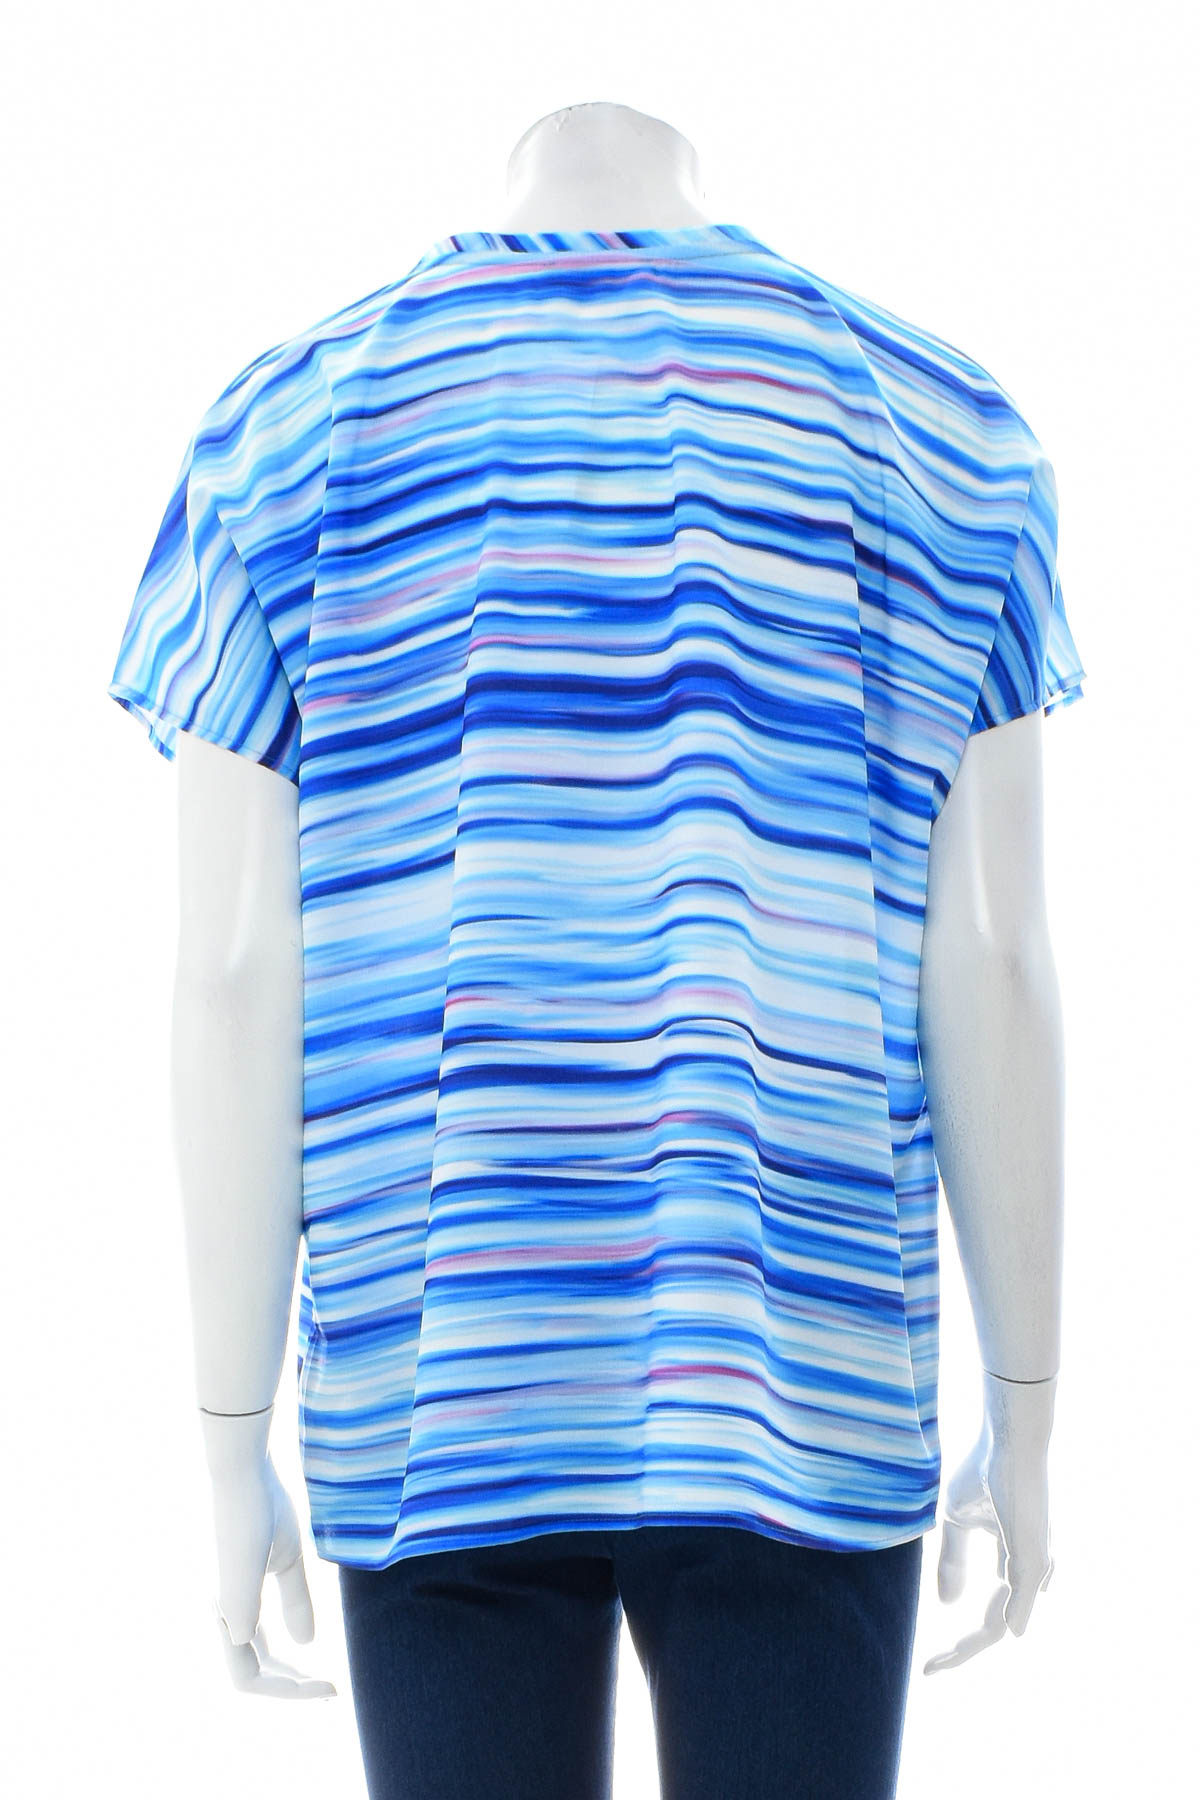 Γυναικείо πουκάμισο - Fiora Blue - 1